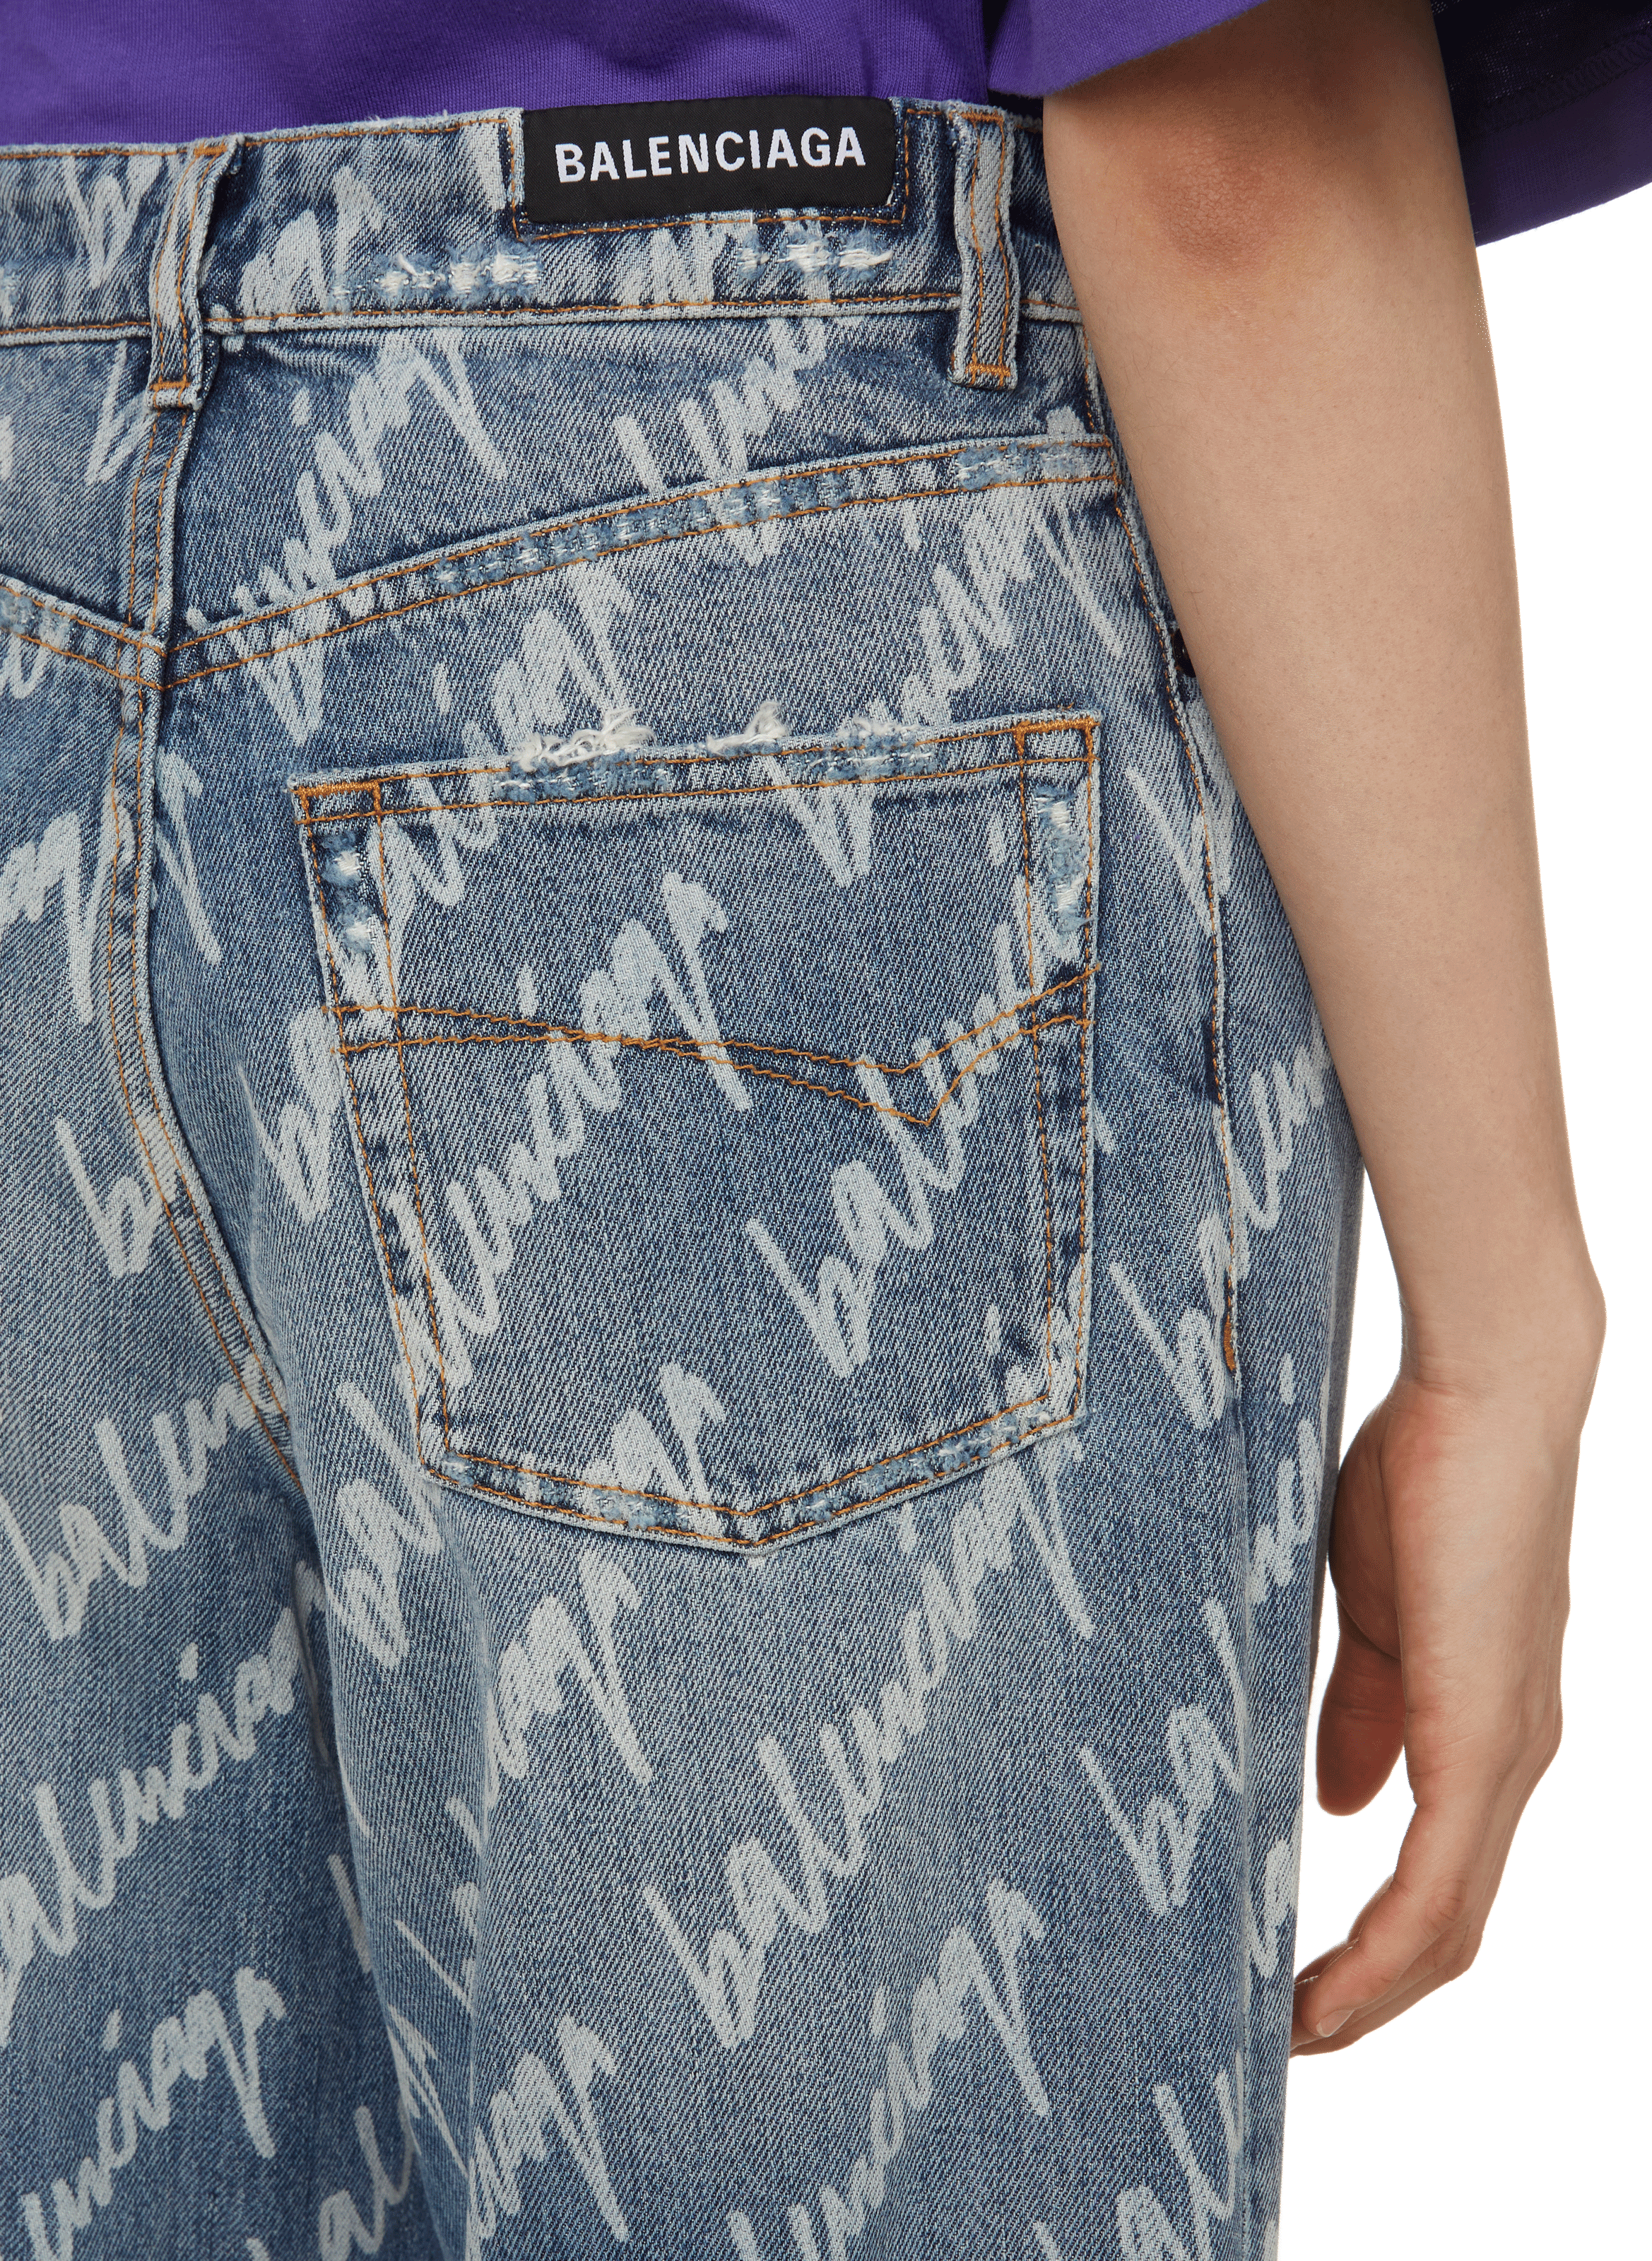 Quần jeans nữ ống xuông BALENCIAGA thêu chữ đẹp độc SIÊU CẤP quần j  lien  fashion